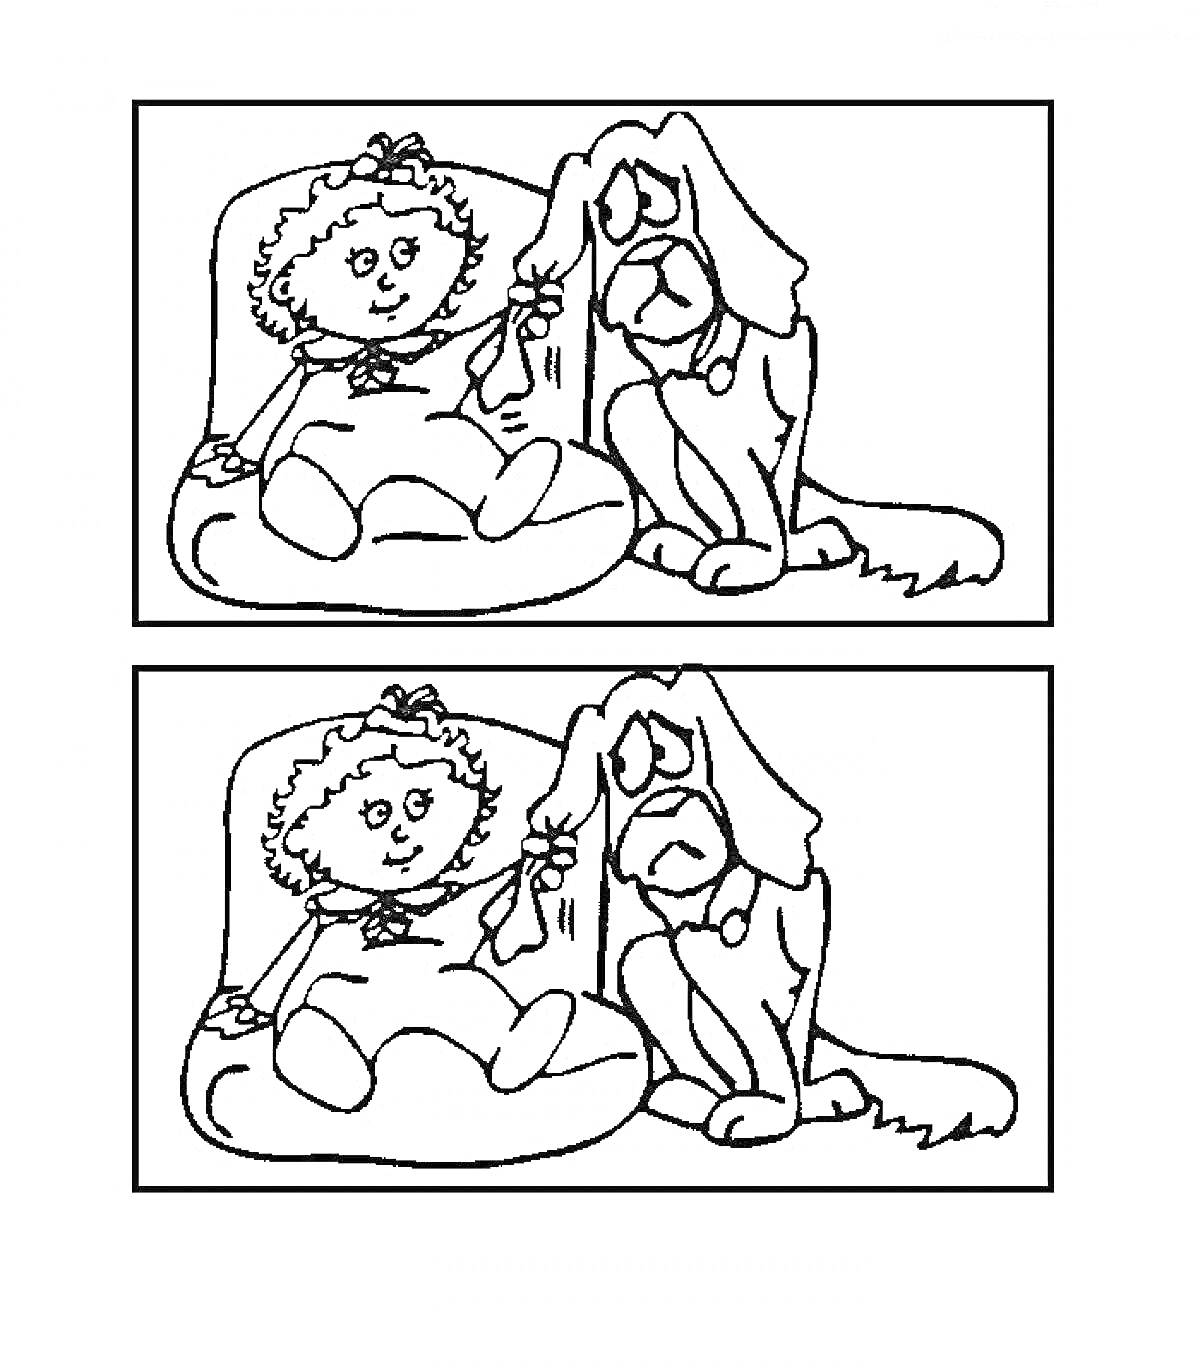 Раскраска Раскраска - Найди отличия: девочка на подушке с бантом в волосах, плюшевый щенок с длинными ушами